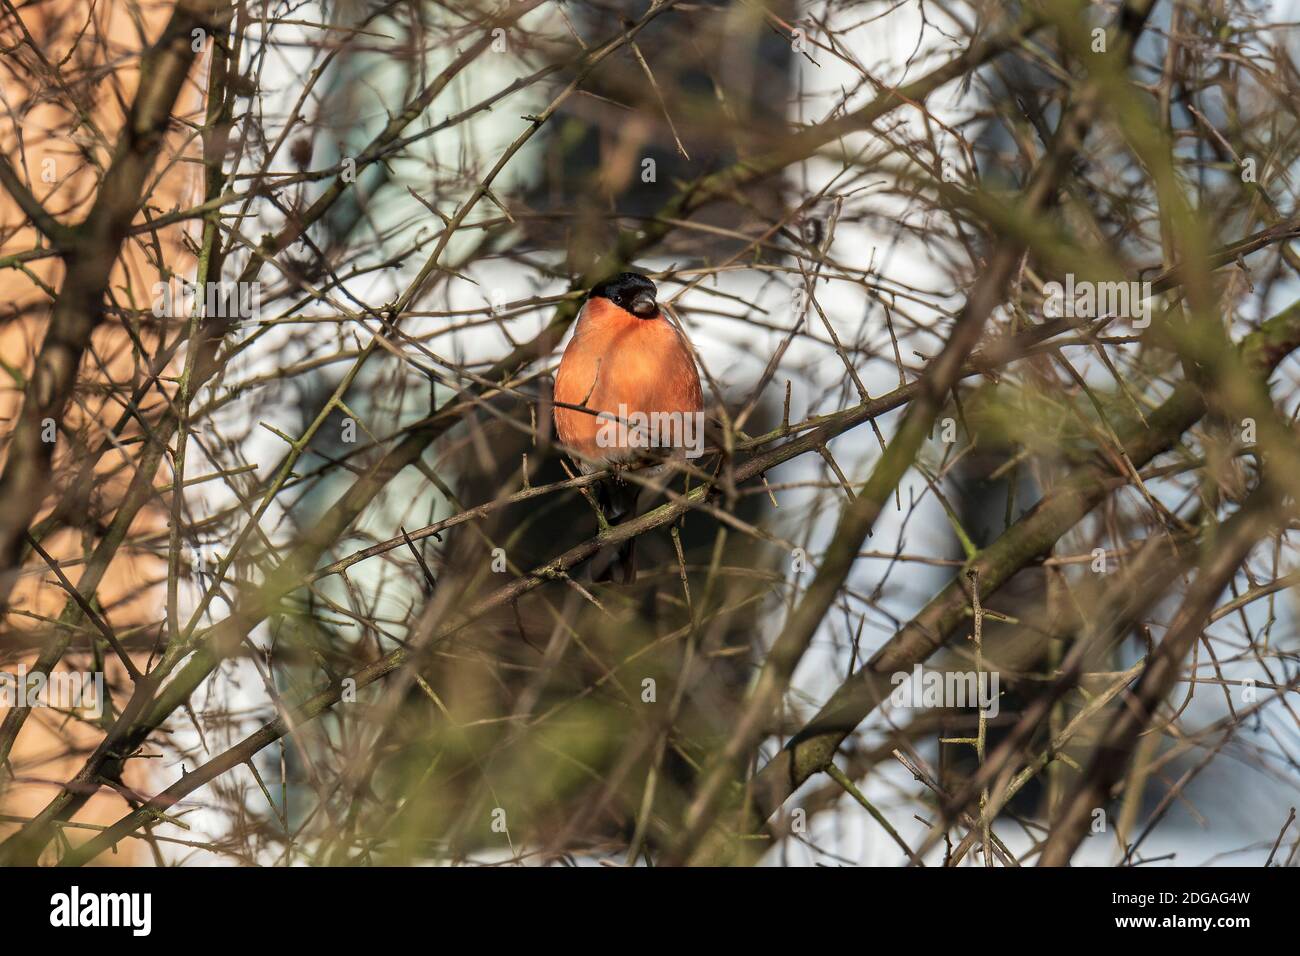 Der Eurasische Gimpel, gewöhnlicher Gimpel oder Gimpel in den Ästen eines Baumes. Ein kleiner Singvogel in der Familie der Finken. Stockfoto